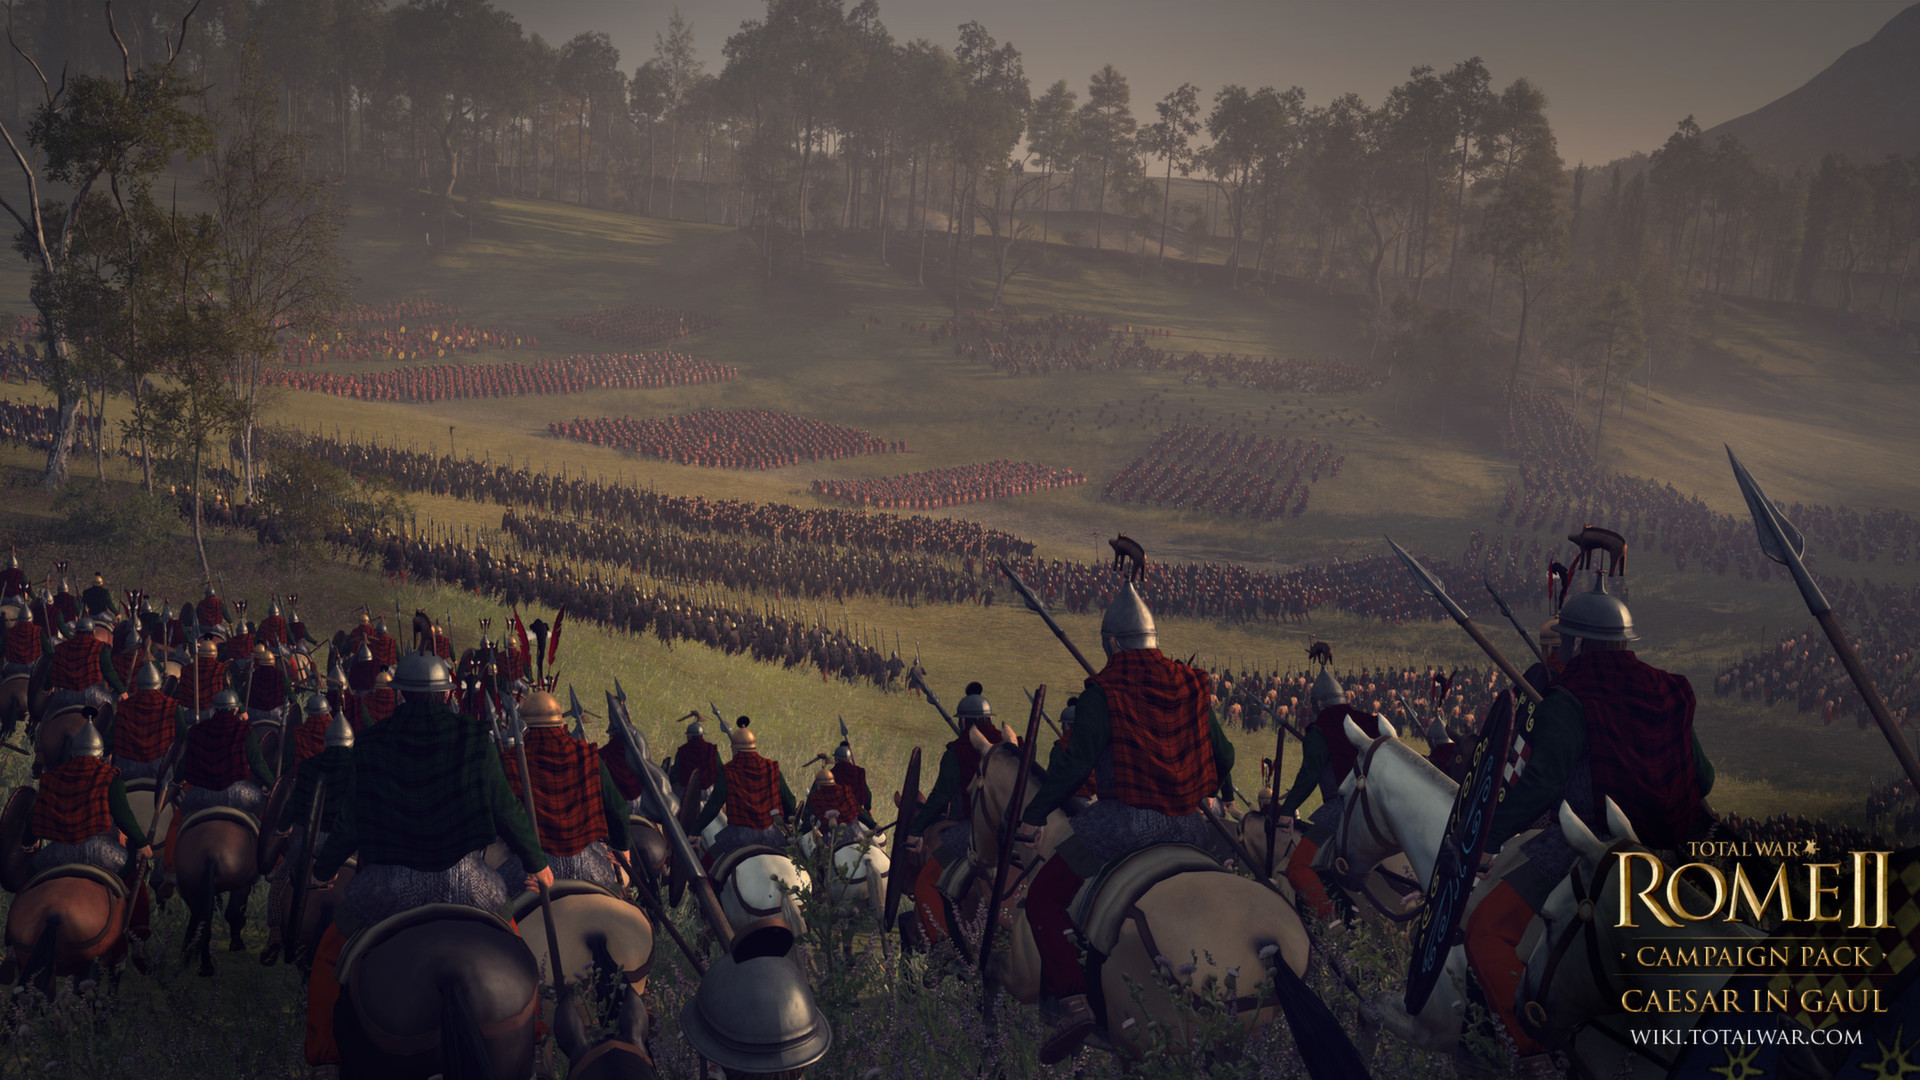 Total War: ROME II - Caesar in Gaul Campaign Pack Featured Screenshot #1